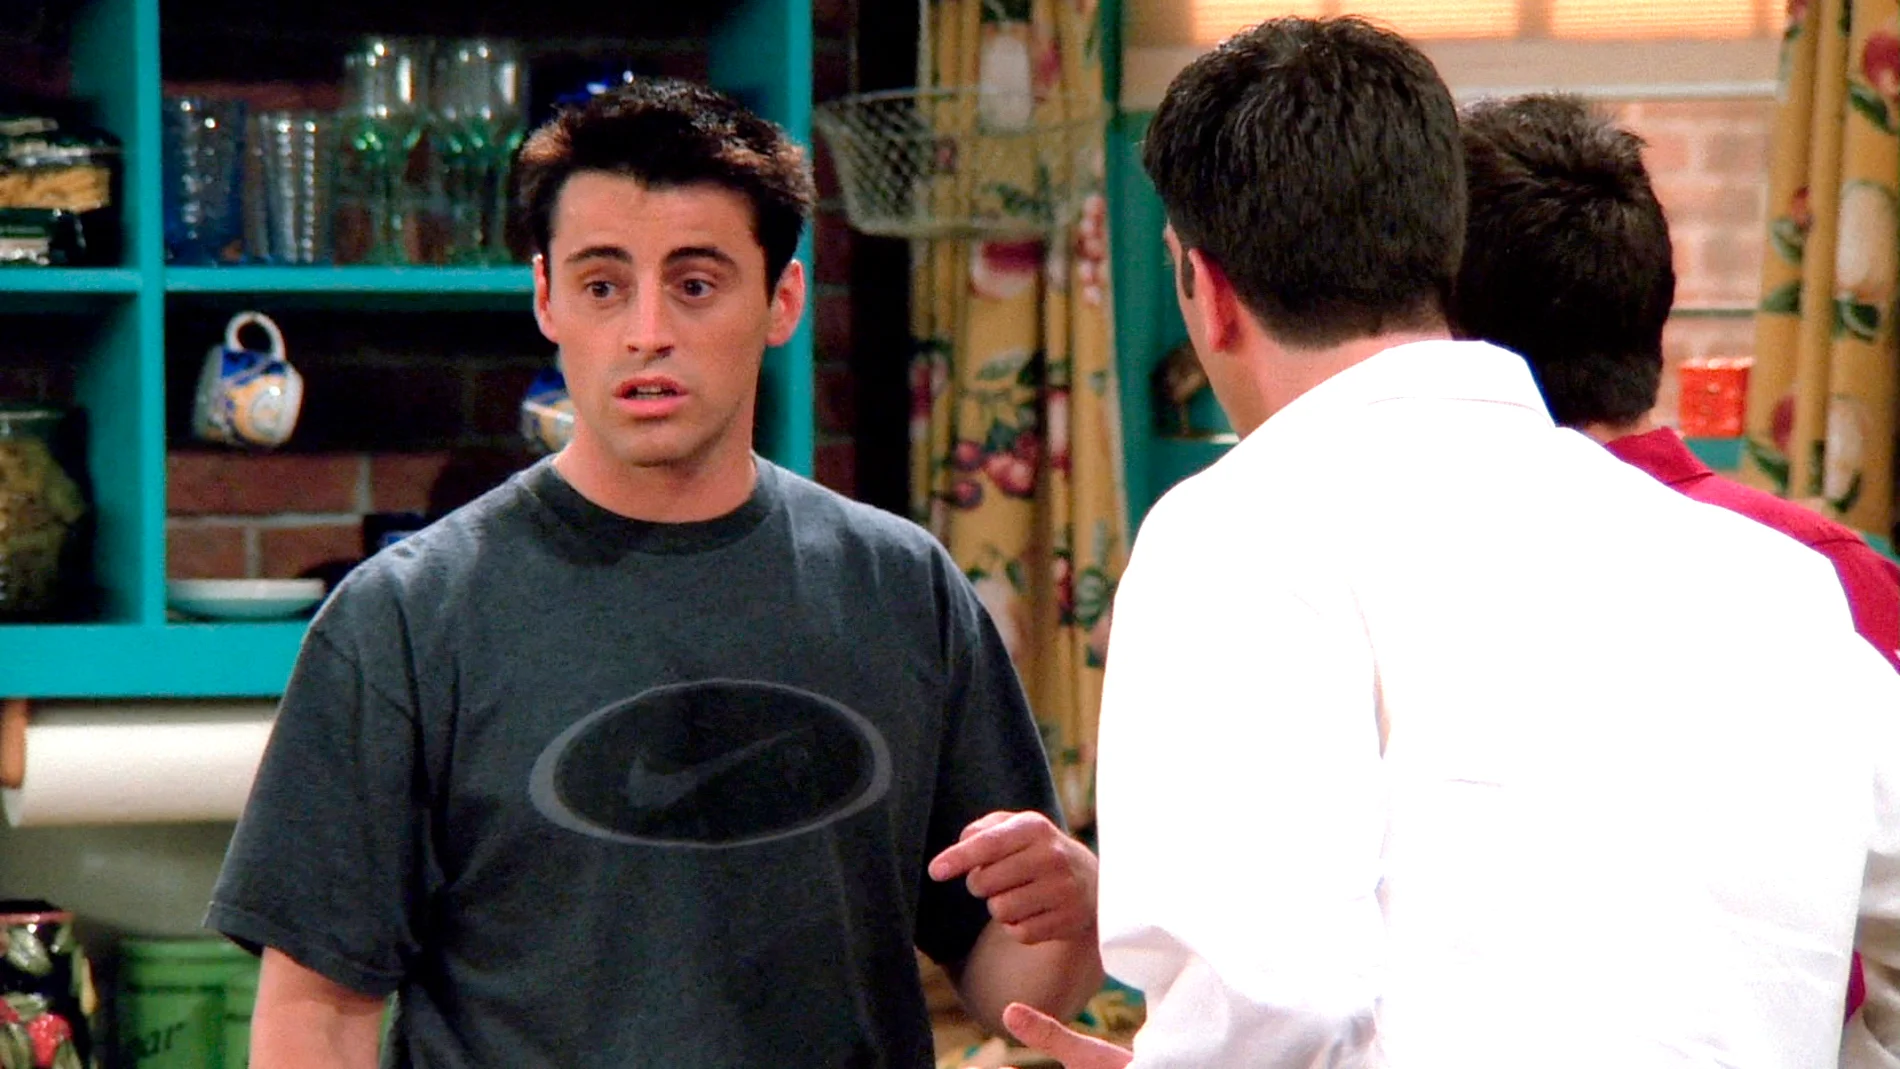 Joey descubre que sus sastre le mete mano